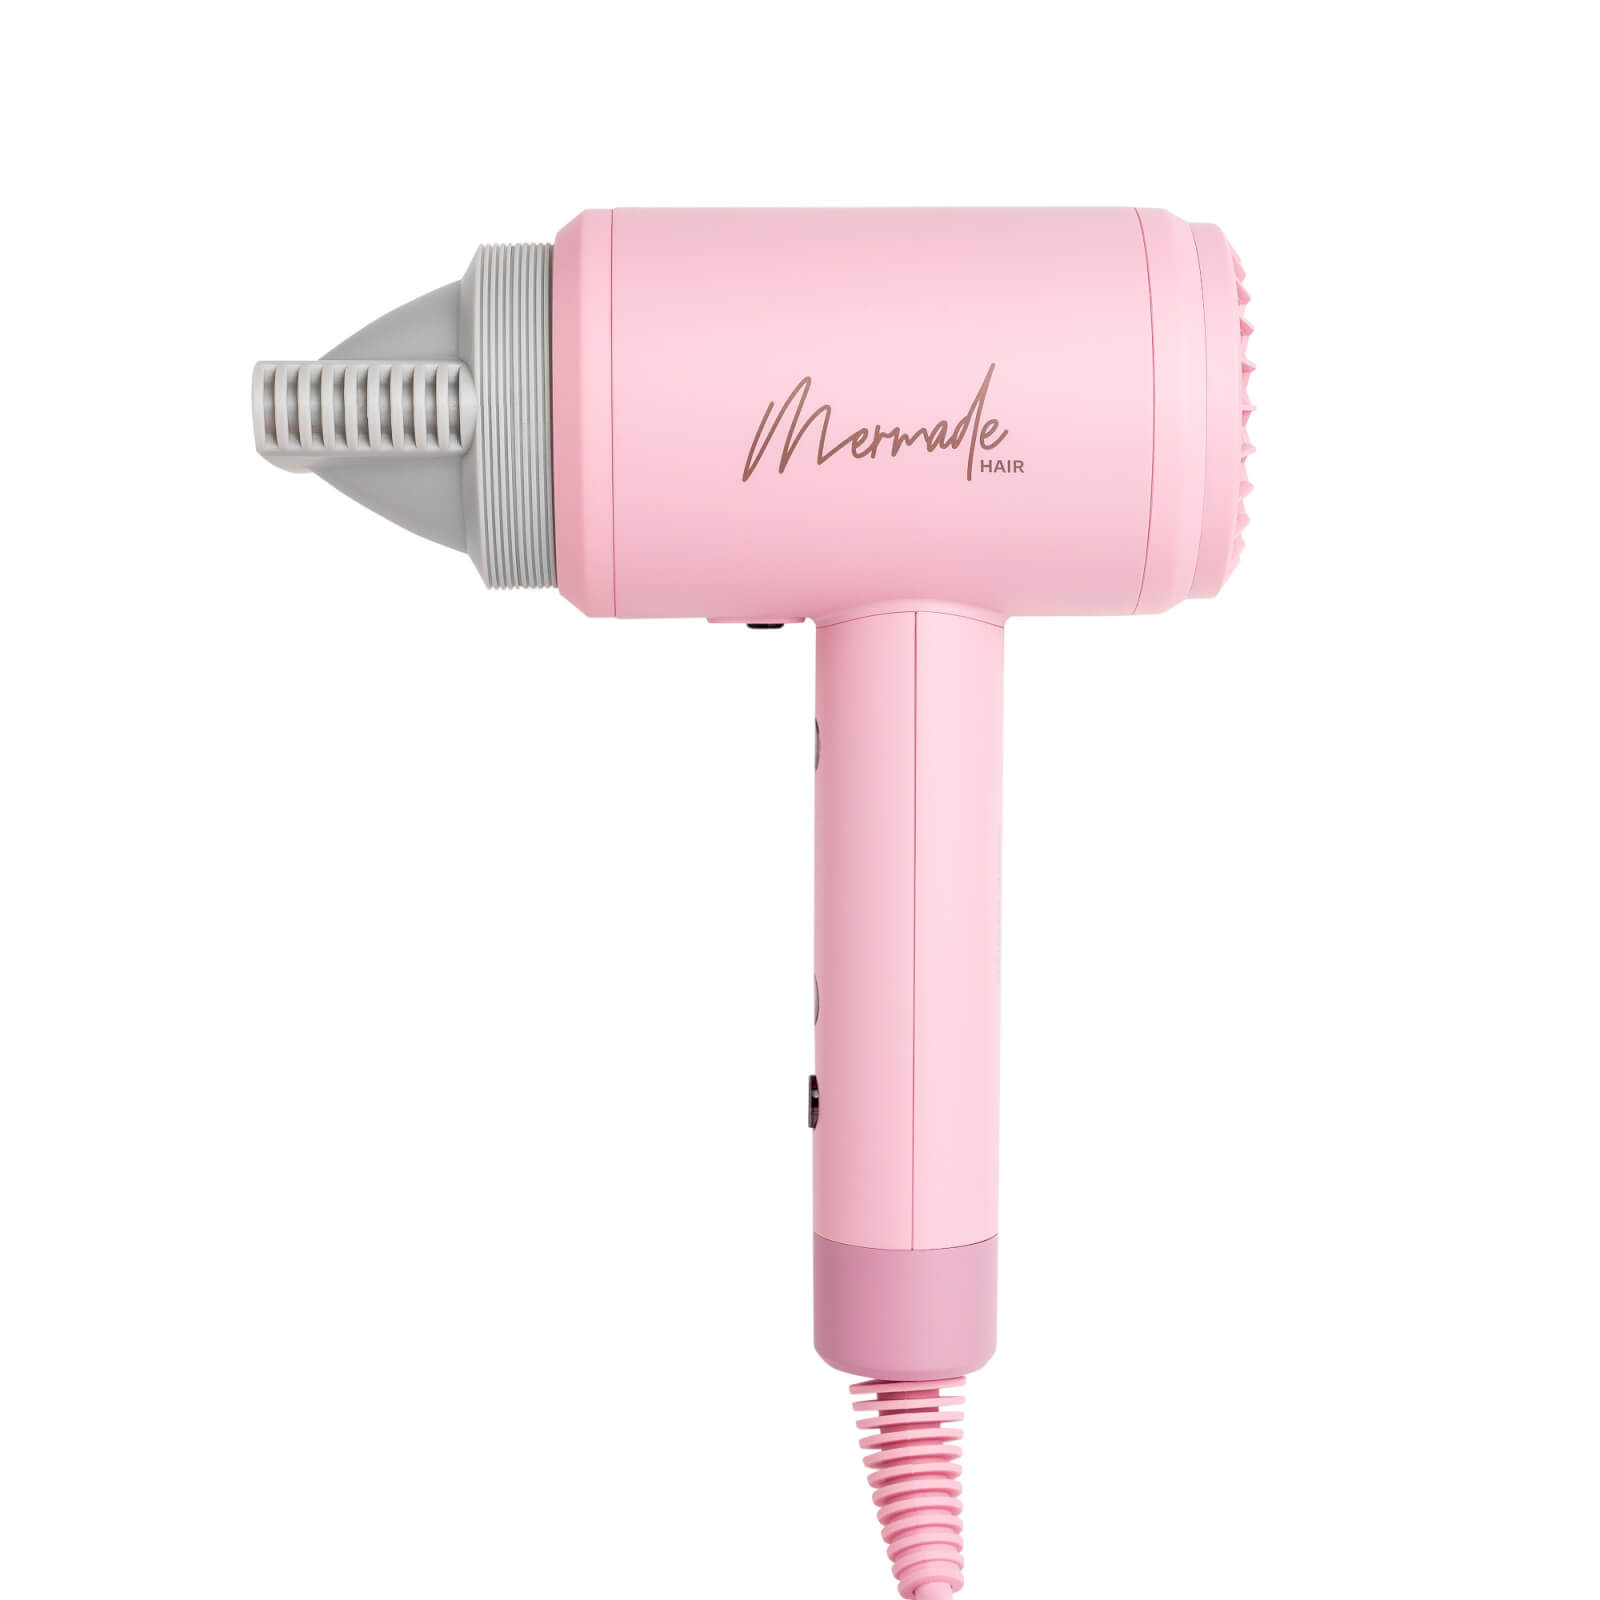 Image of Mermade Hair Hairdryer - Pink (EU)